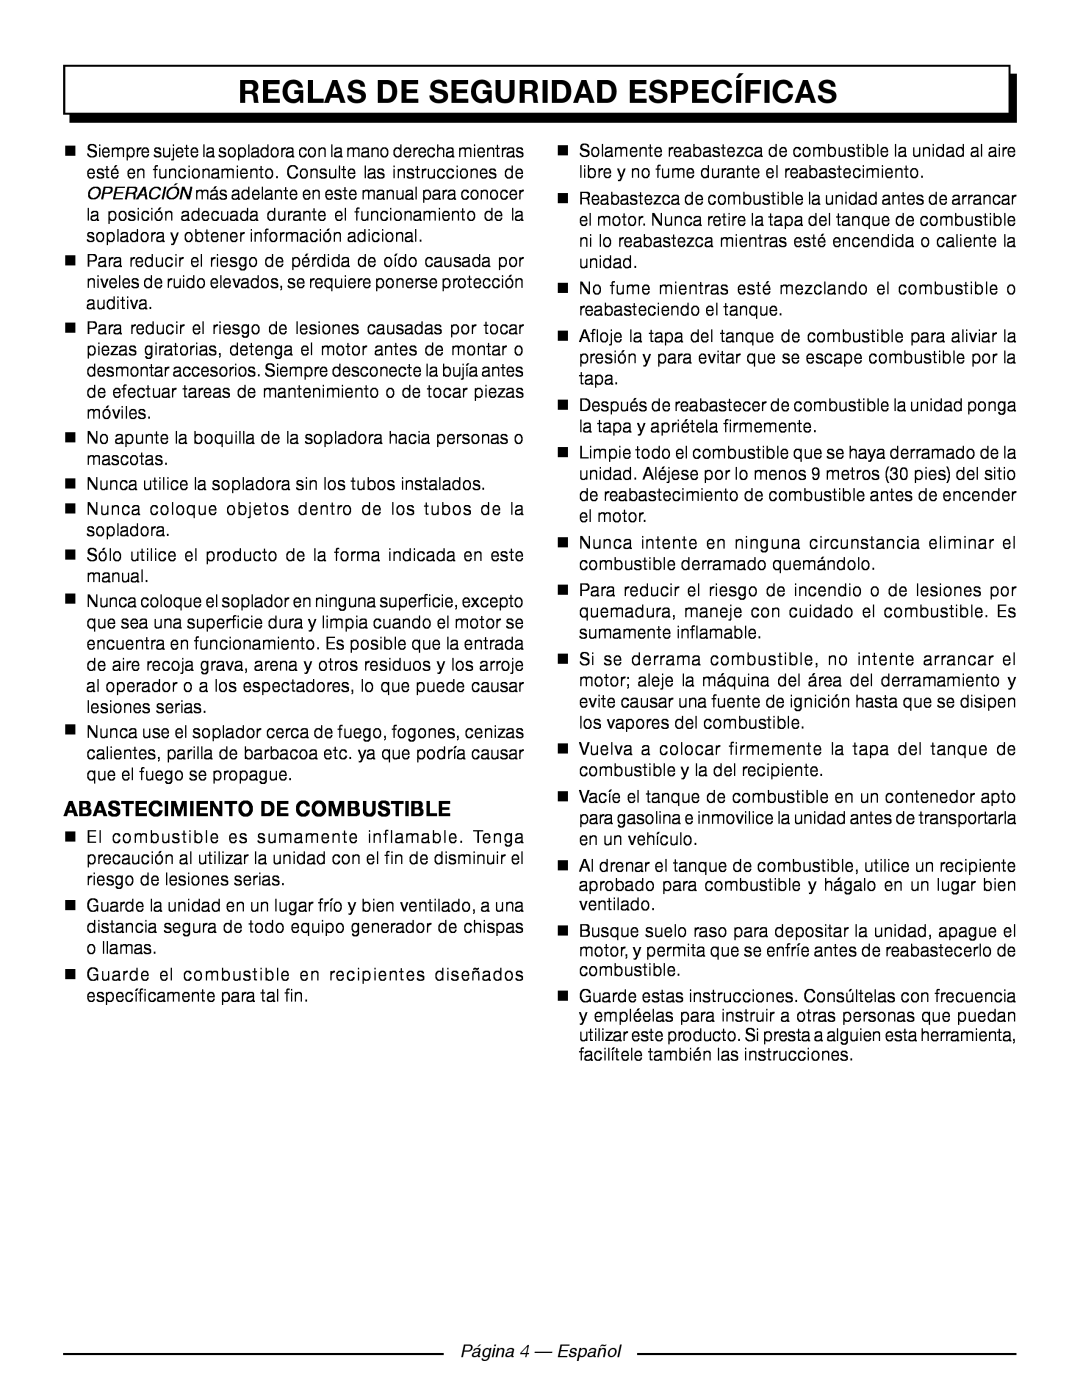 Homelite UT09521 manuel dutilisation Reglas De Seguridad Específicas, Abastecimiento De Combustible, Página 4 - Español 